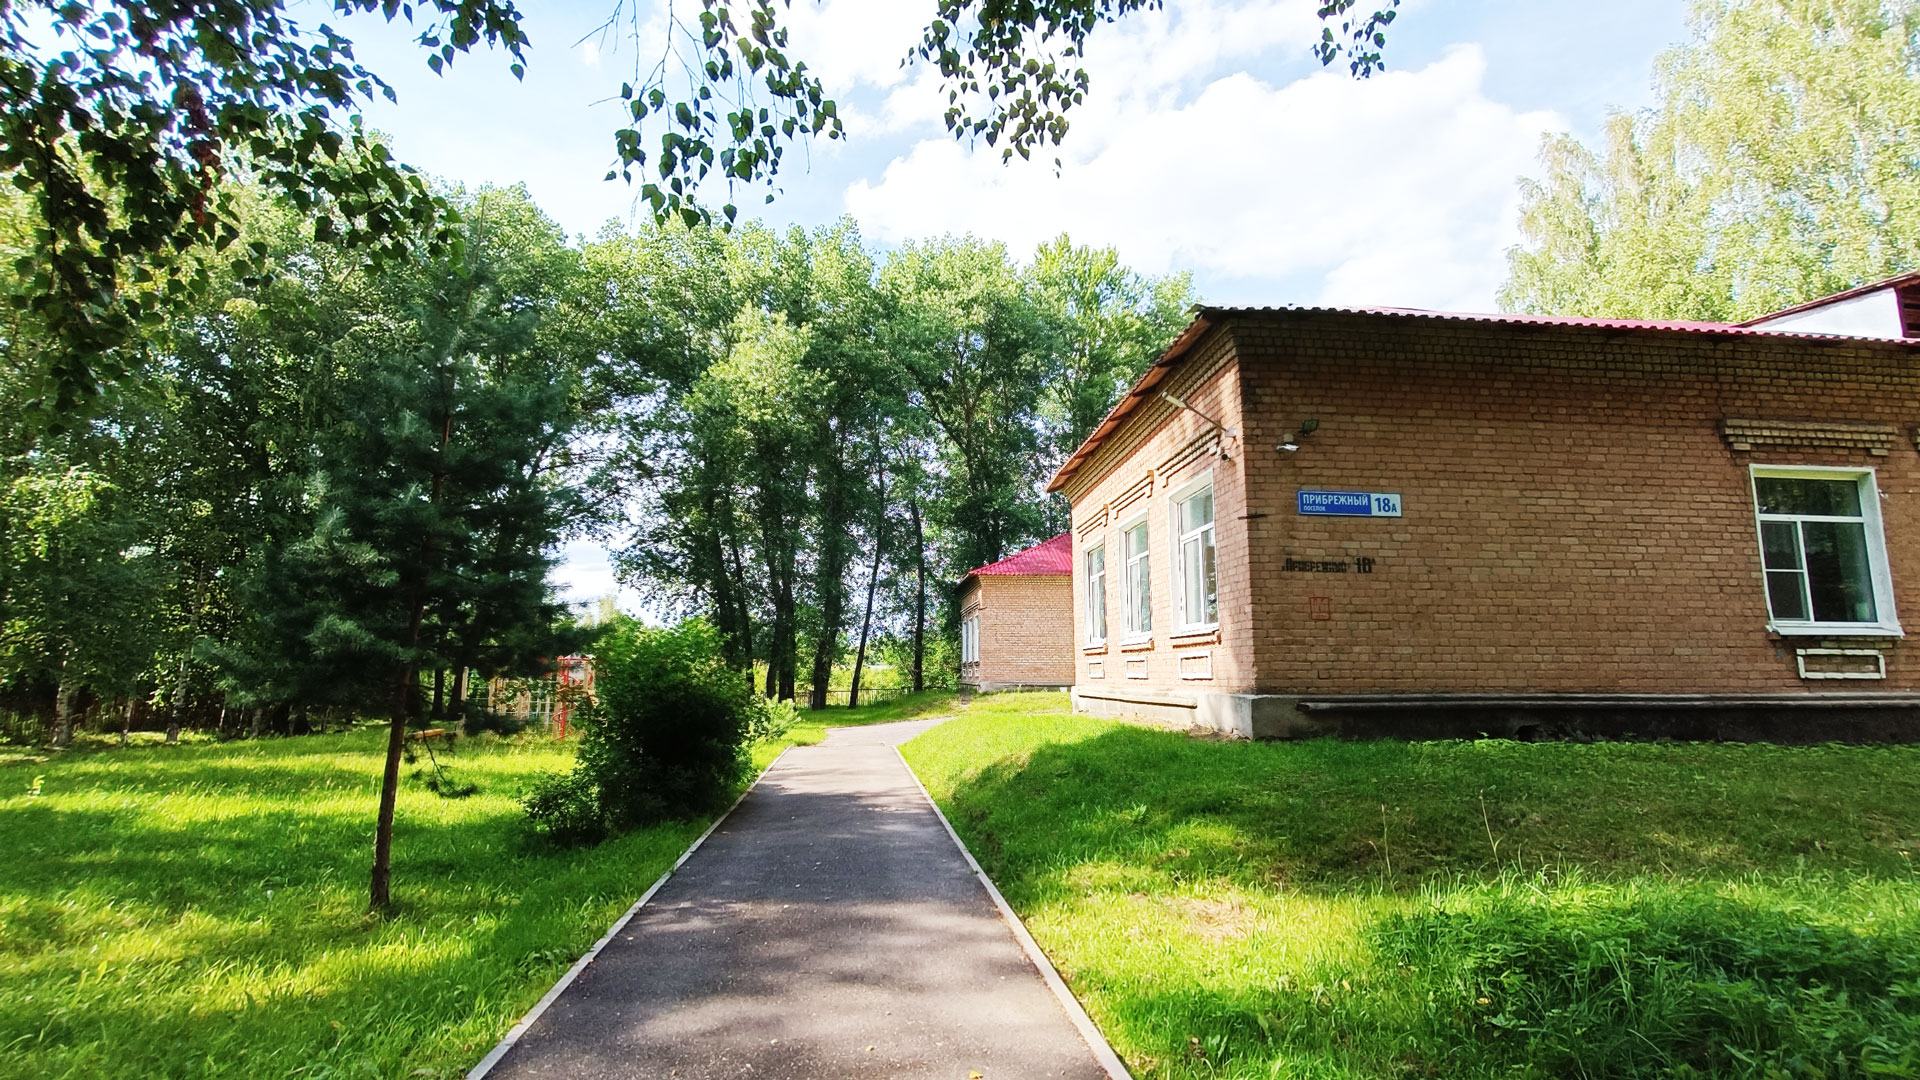 Начальная школа – детский сад 85 Ярославль: общий вид территории (школа).